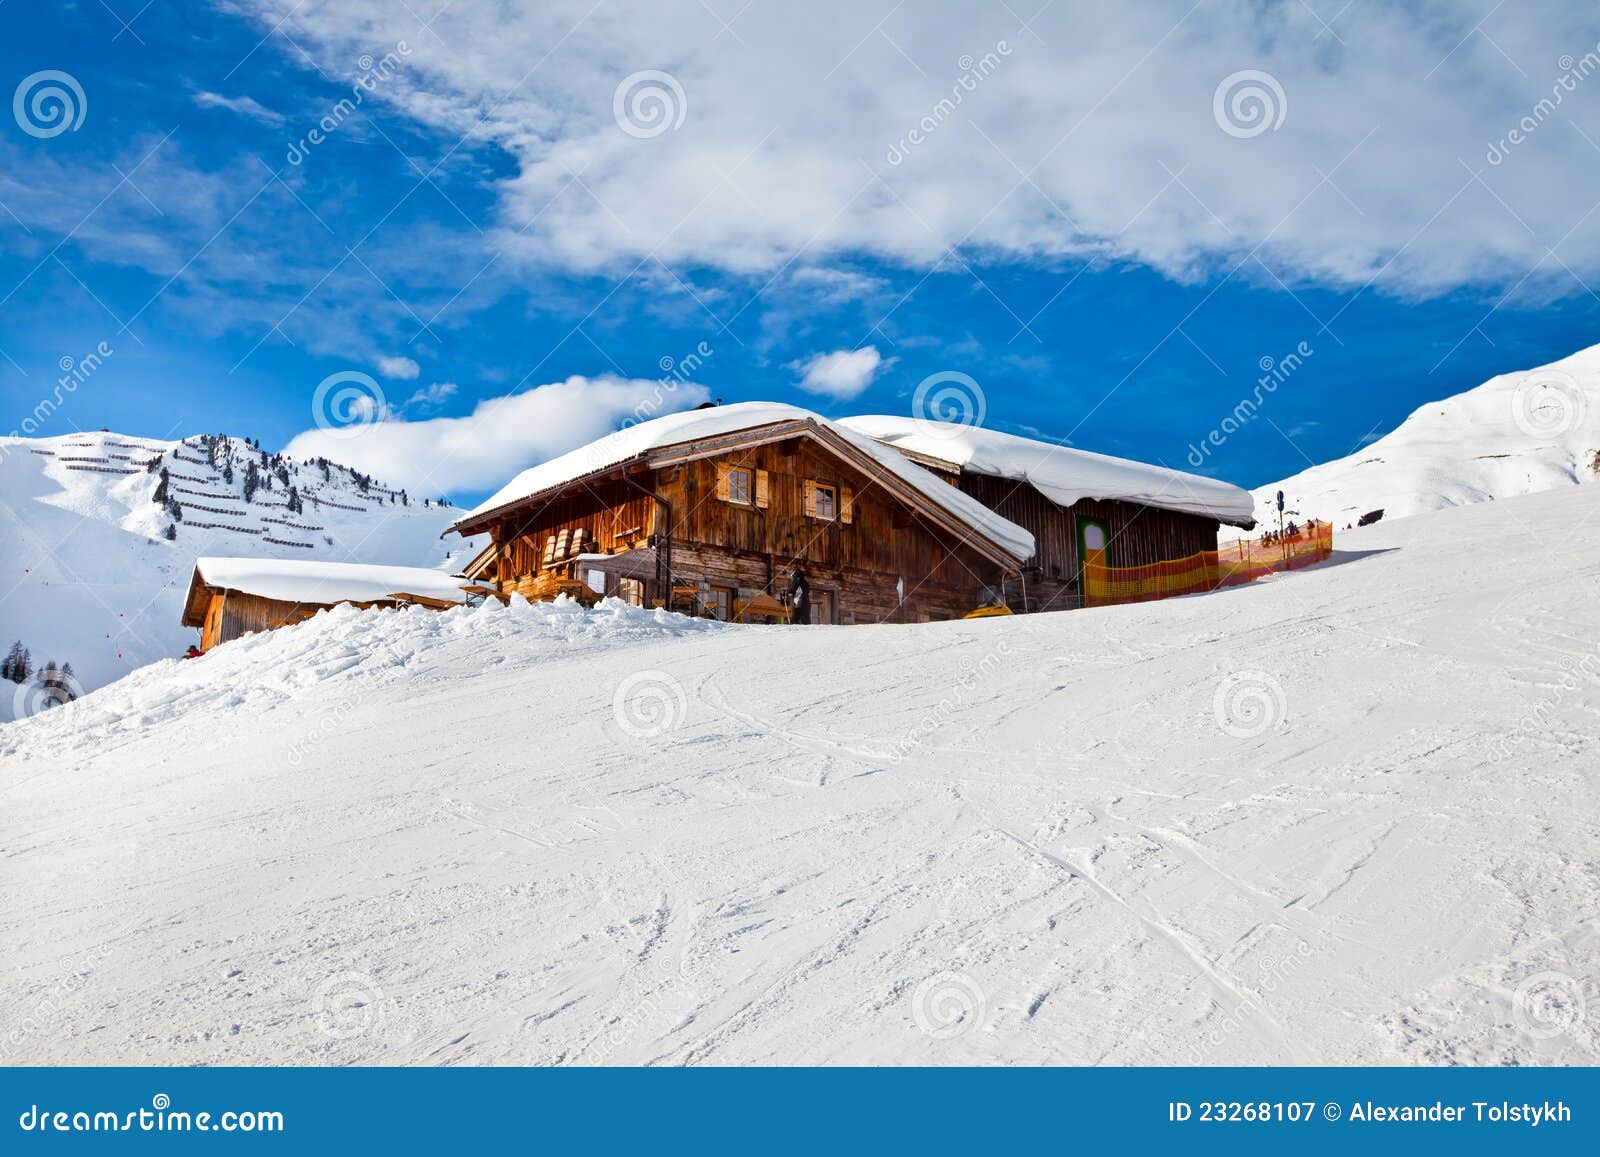 Huis In Sneeuw. Alpen, Mayrhofen, Oostenrijk Stock ...